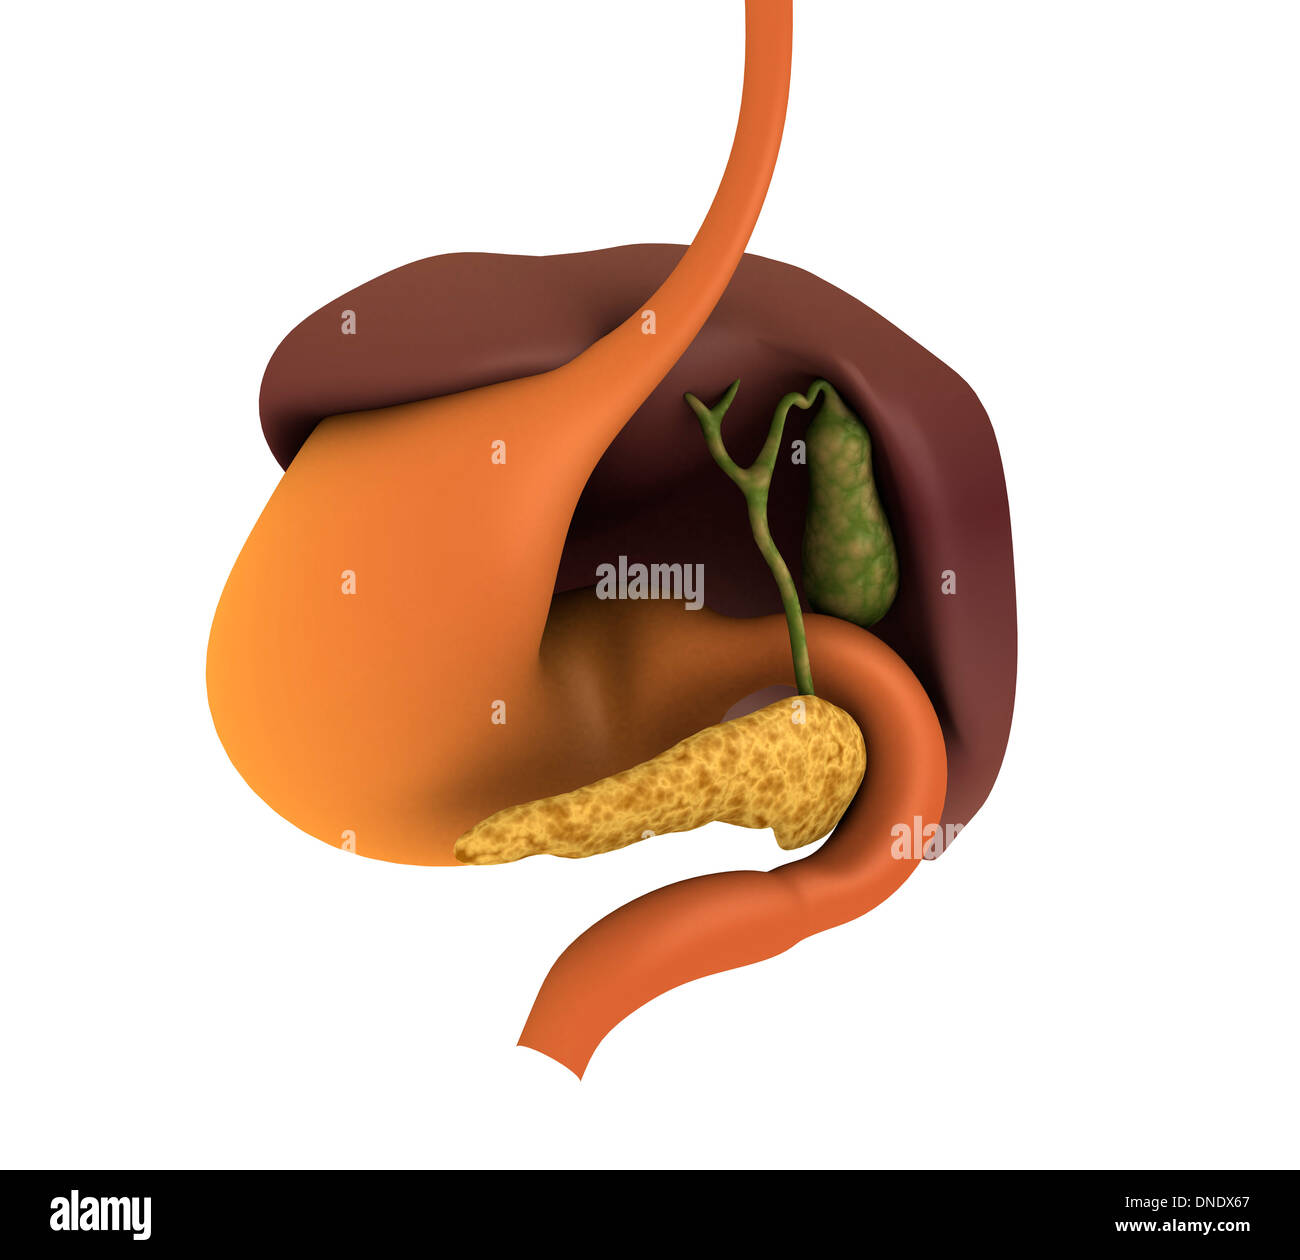 Image conceptuelle du système digestif humain montrant vésicule biliaire, pancréas, l'estomac et le foie. Banque D'Images